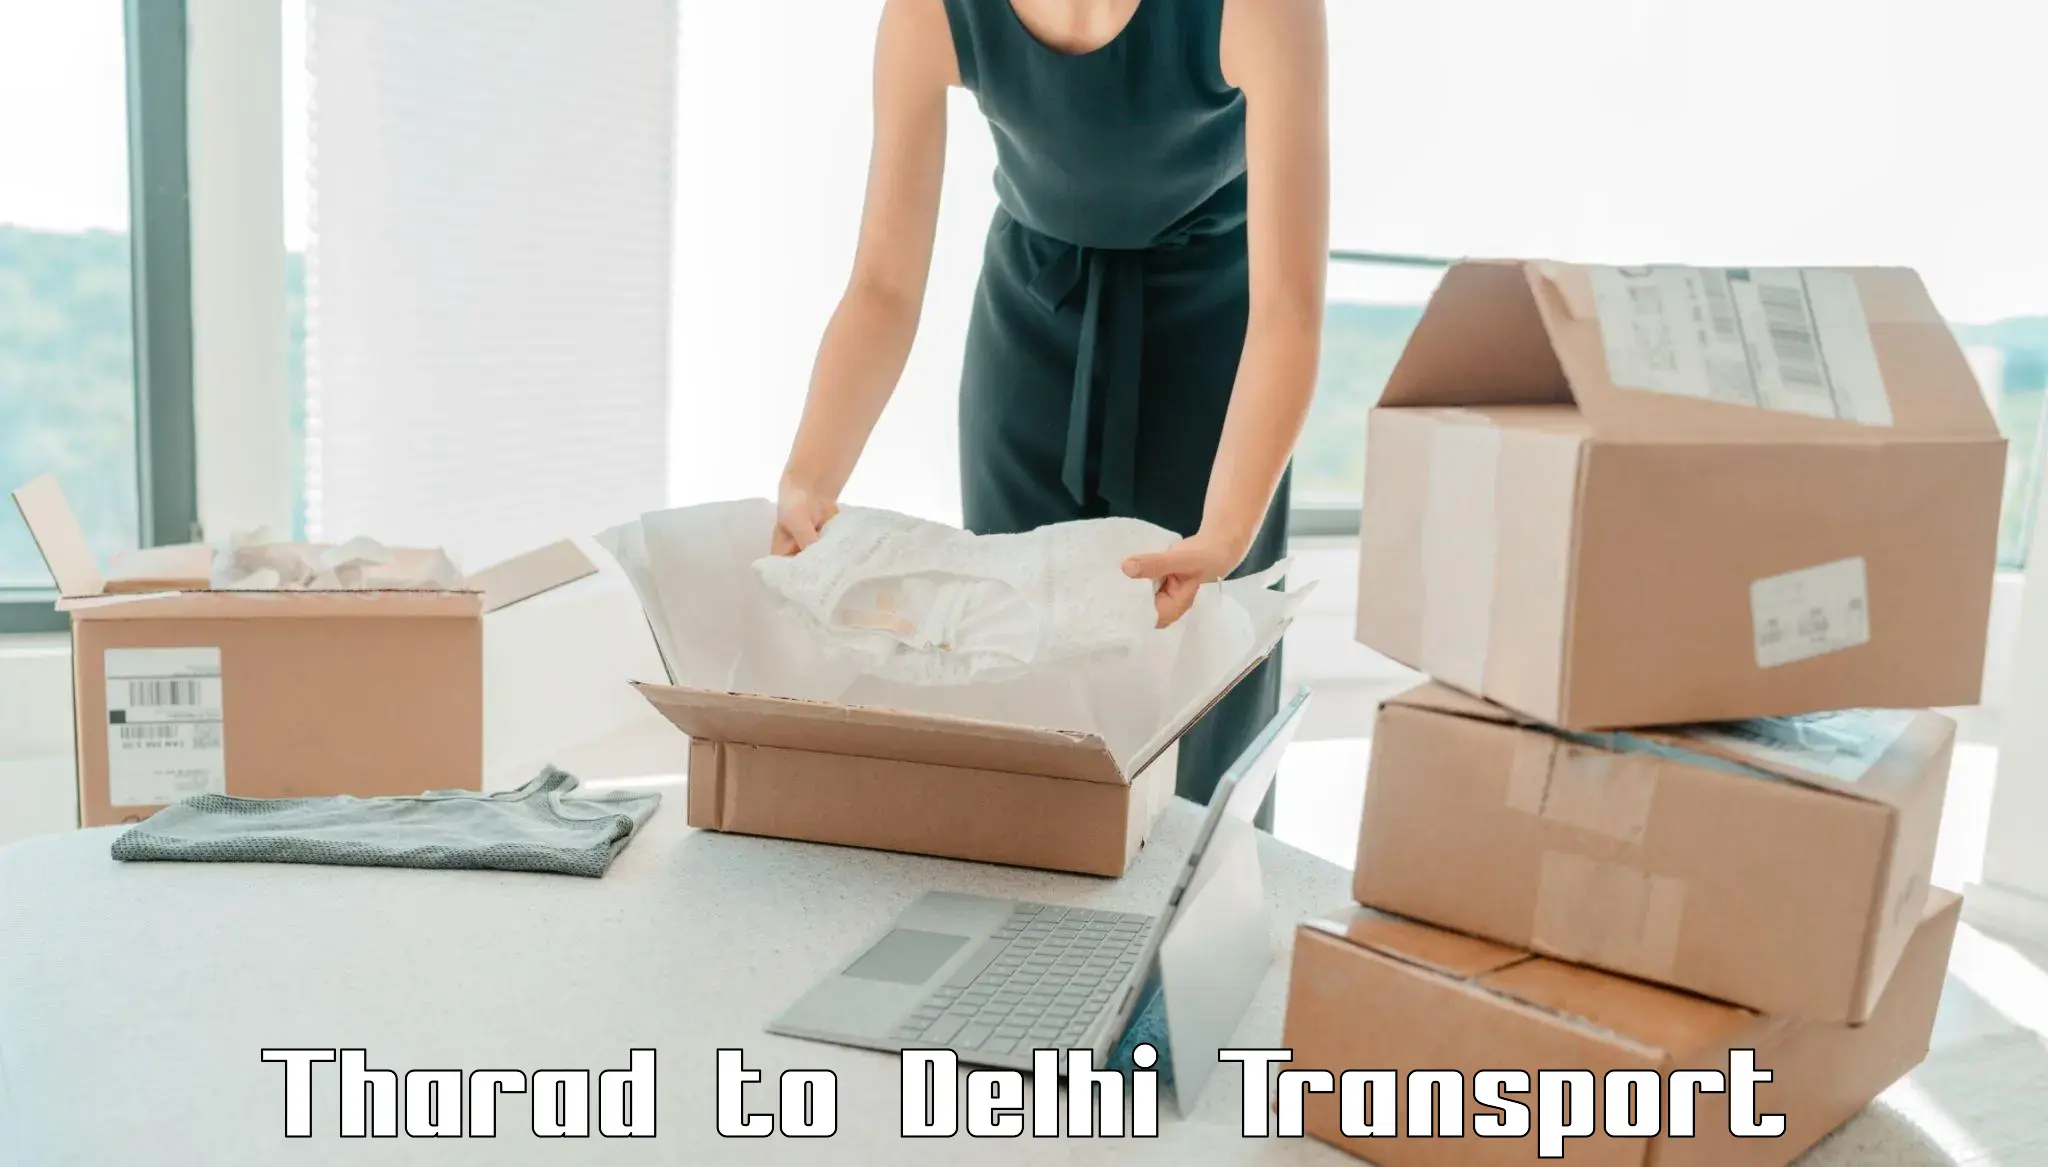 Two wheeler parcel service Tharad to Jamia Millia Islamia New Delhi